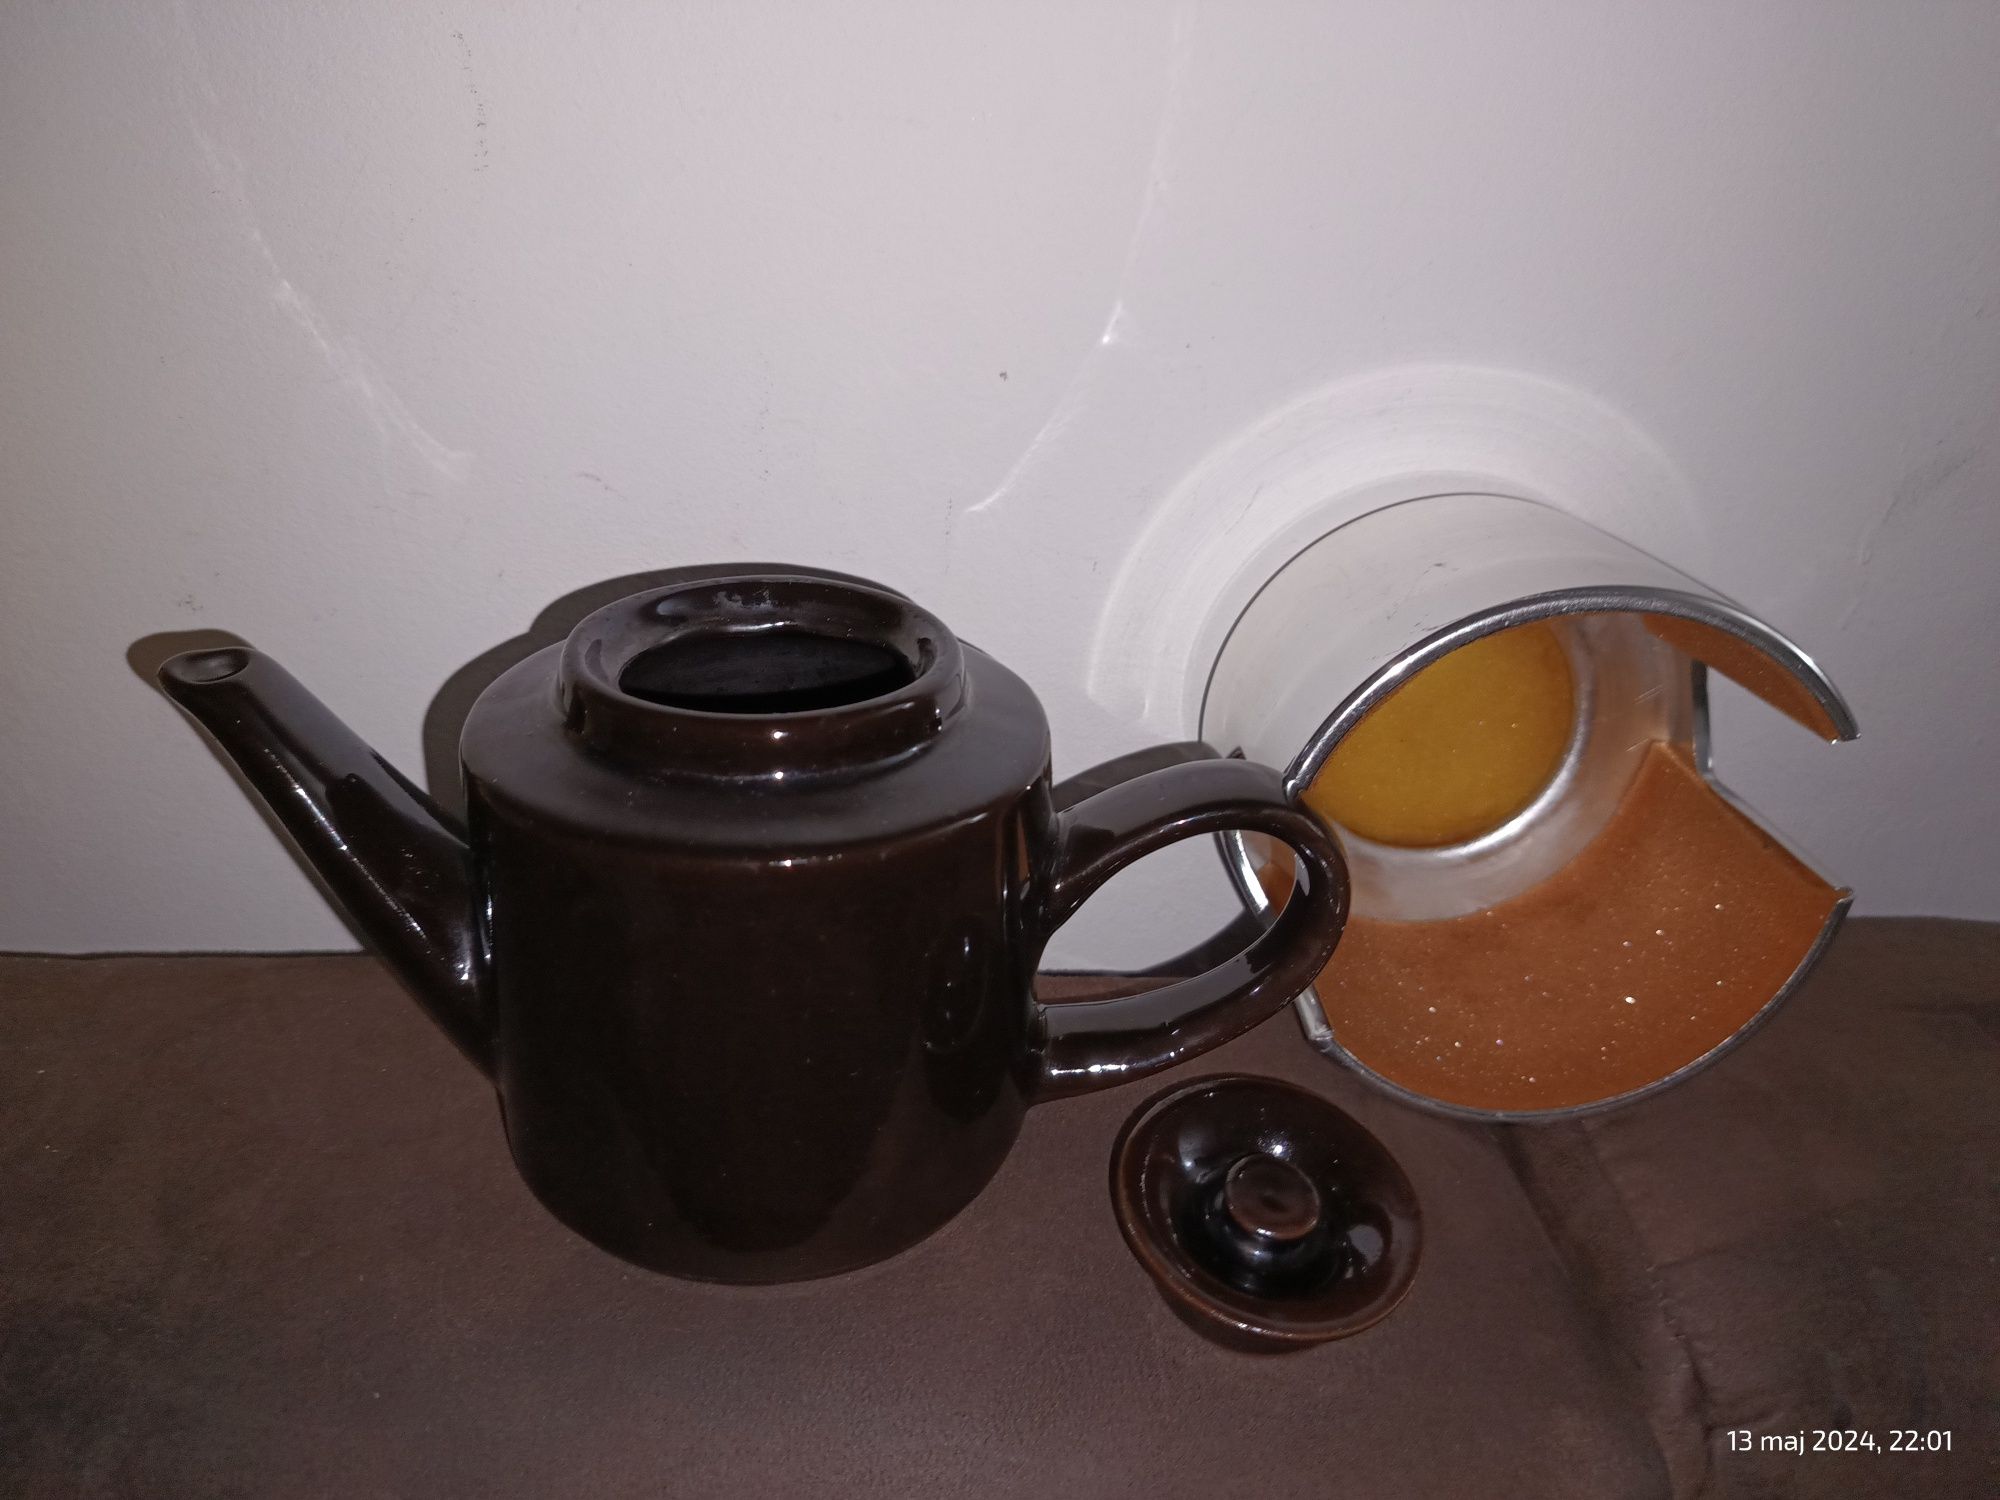 czajniczek do herbaty z osłoną termiczną lata 1950/60